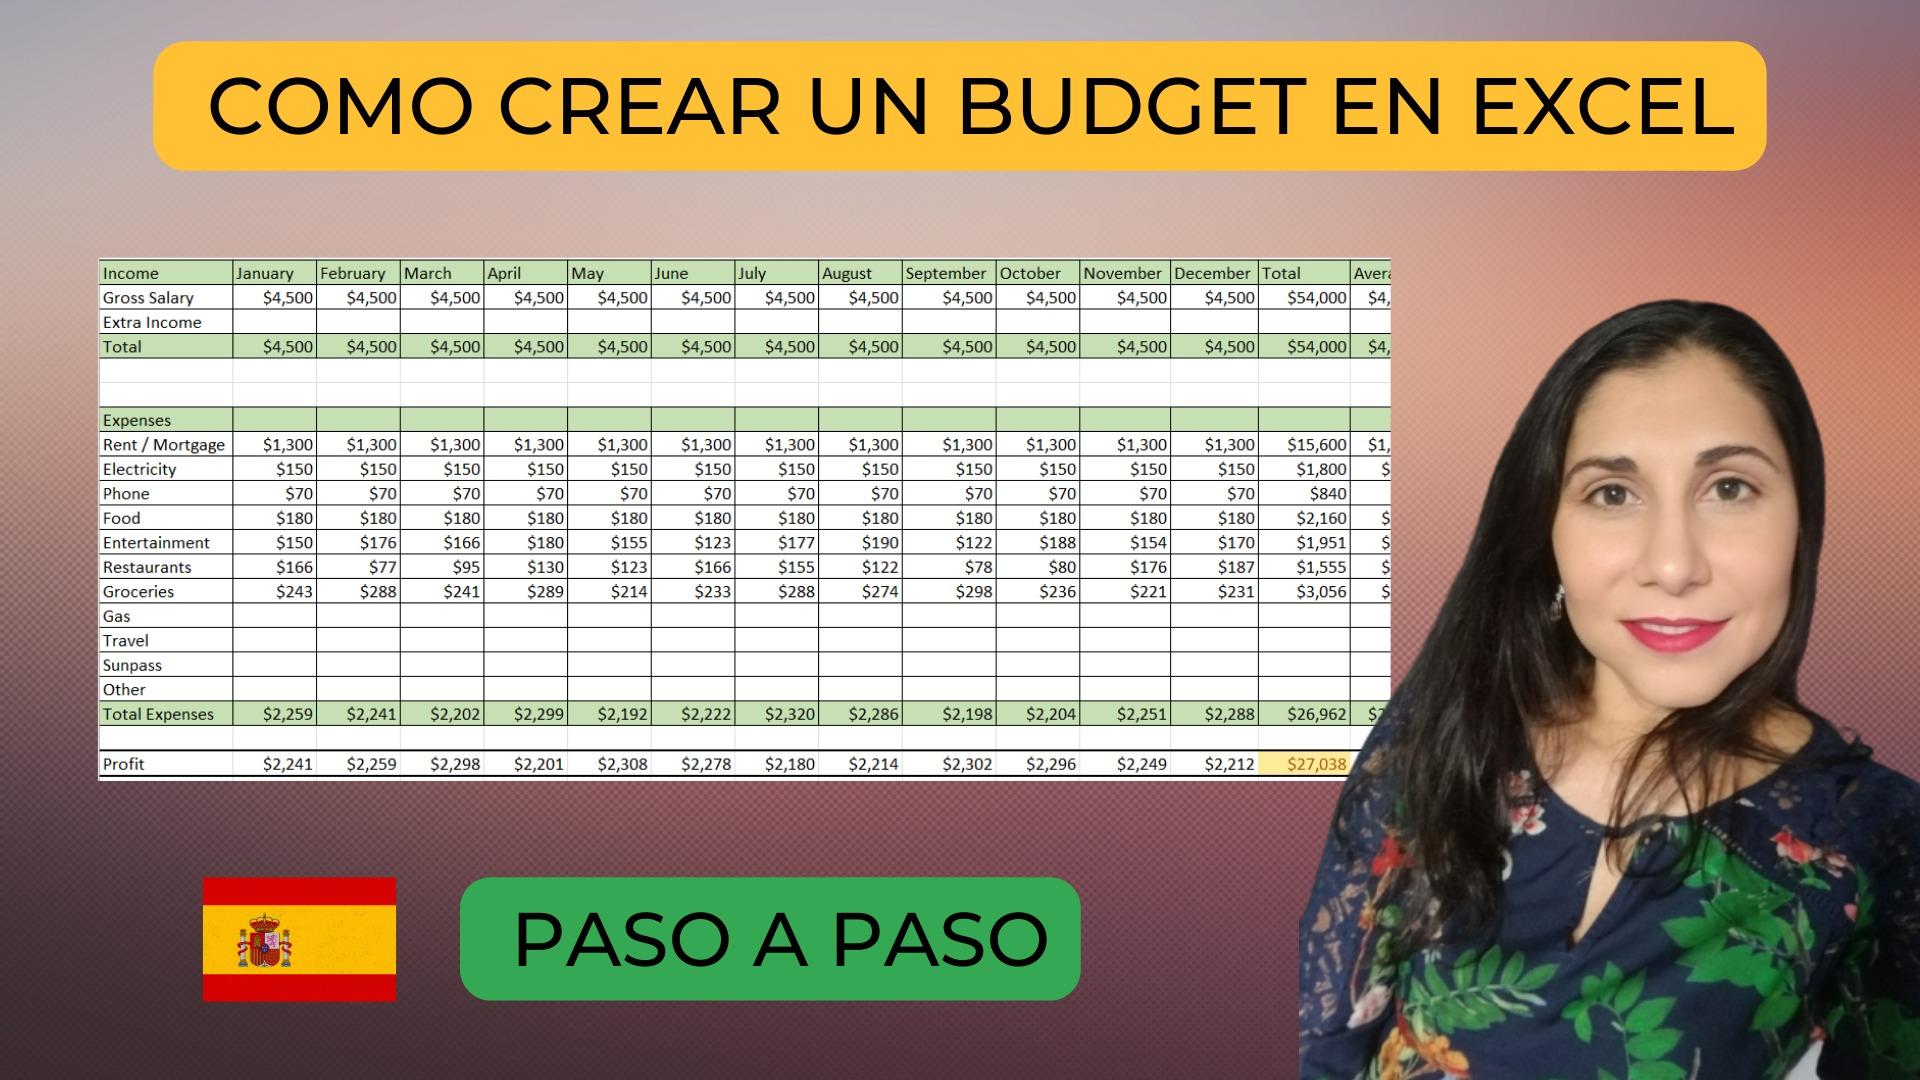 Como Hacer un Budget en Excel - Rapido y sin QUickBooks